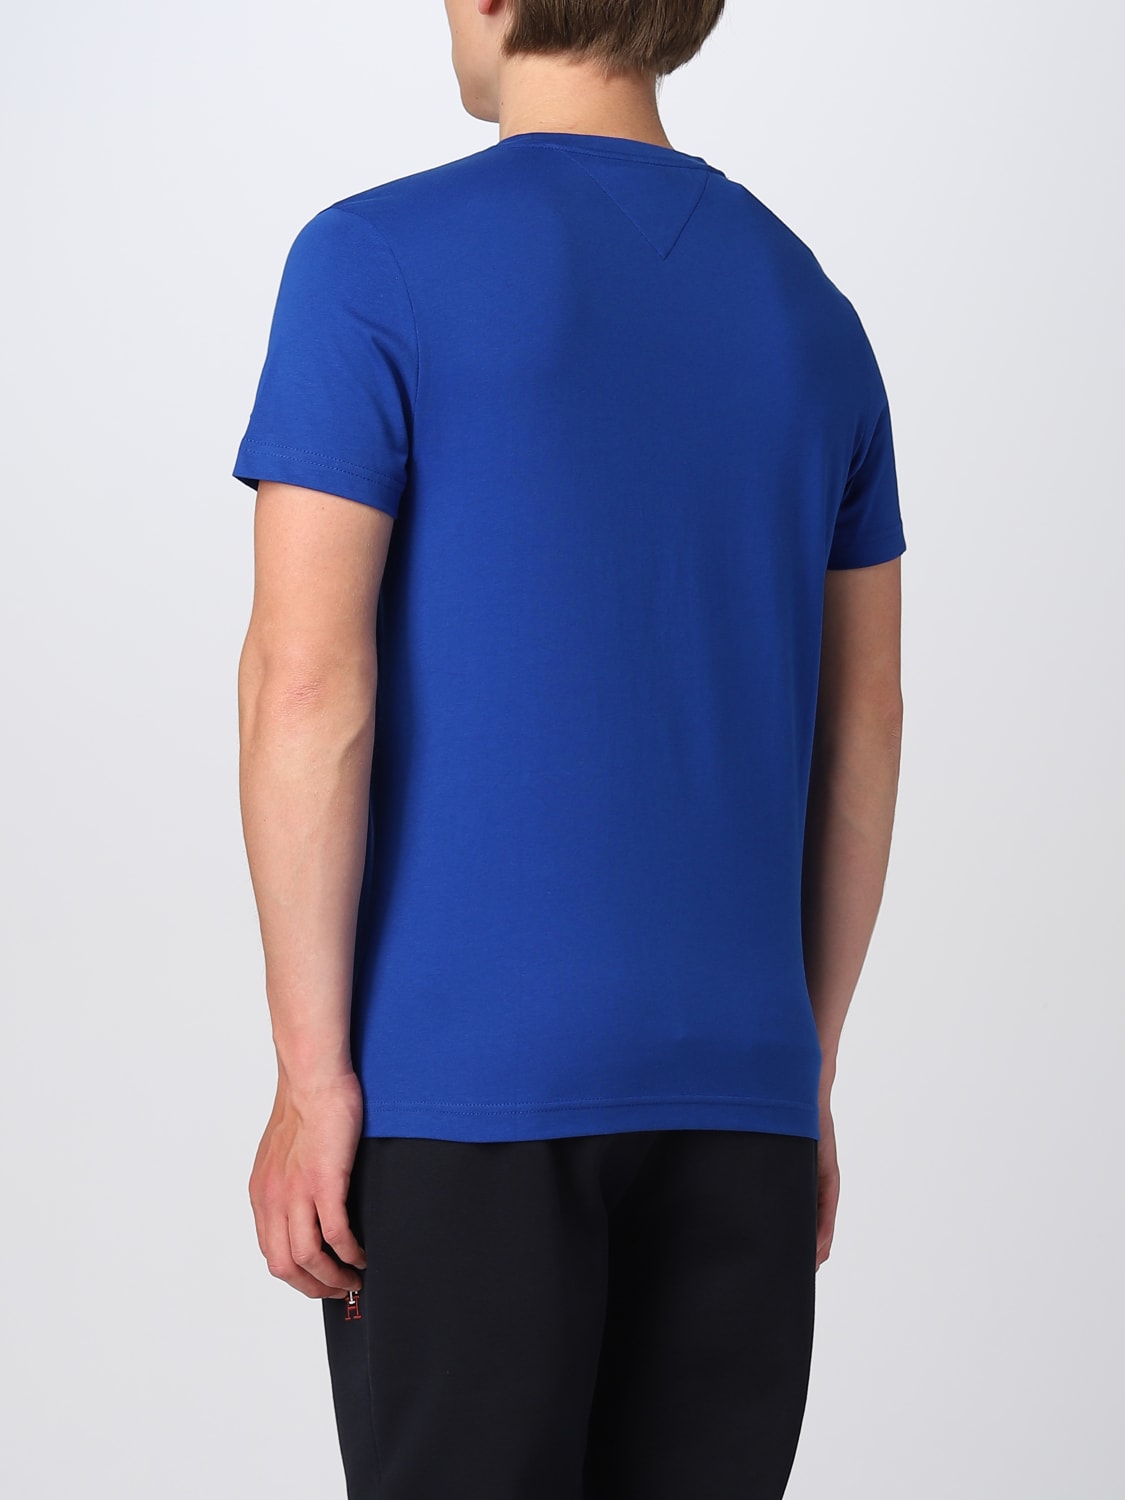 TOMMY HILFIGER: t-shirt for men - Royal Blue | Tommy Hilfiger t-shirt ...